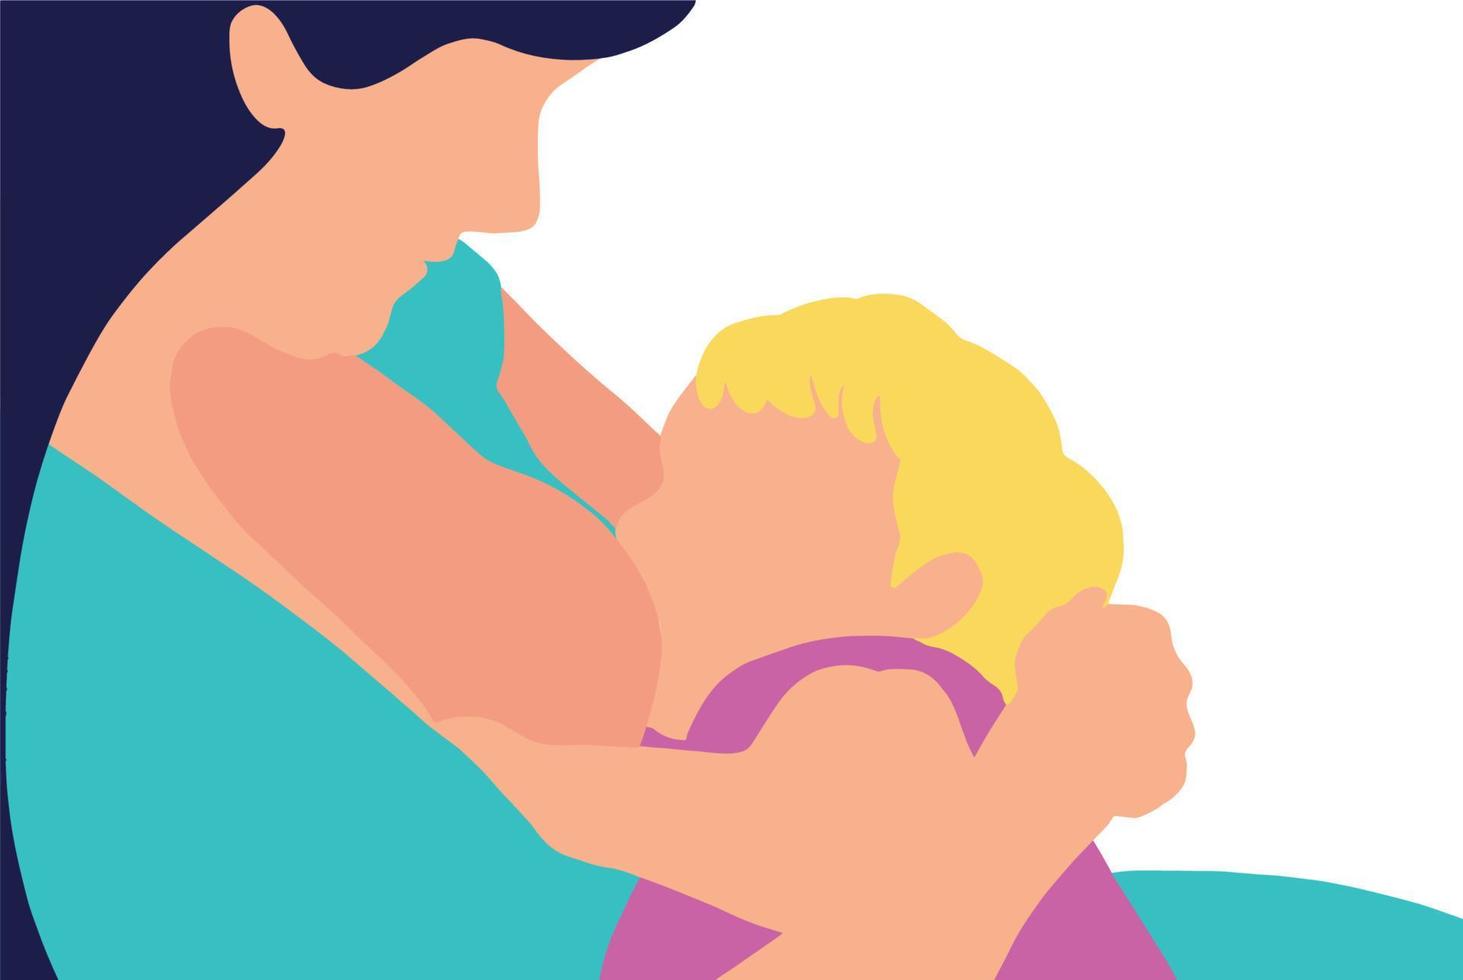 viering van de wereld borstvoedingsweek, 1-7 augustus. roodharige vrouw geeft haar babymeisje borstvoeding en houdt het in haar armen. ondersteuning voor moeders die borstvoeding geven in postpartum, lactatie vector